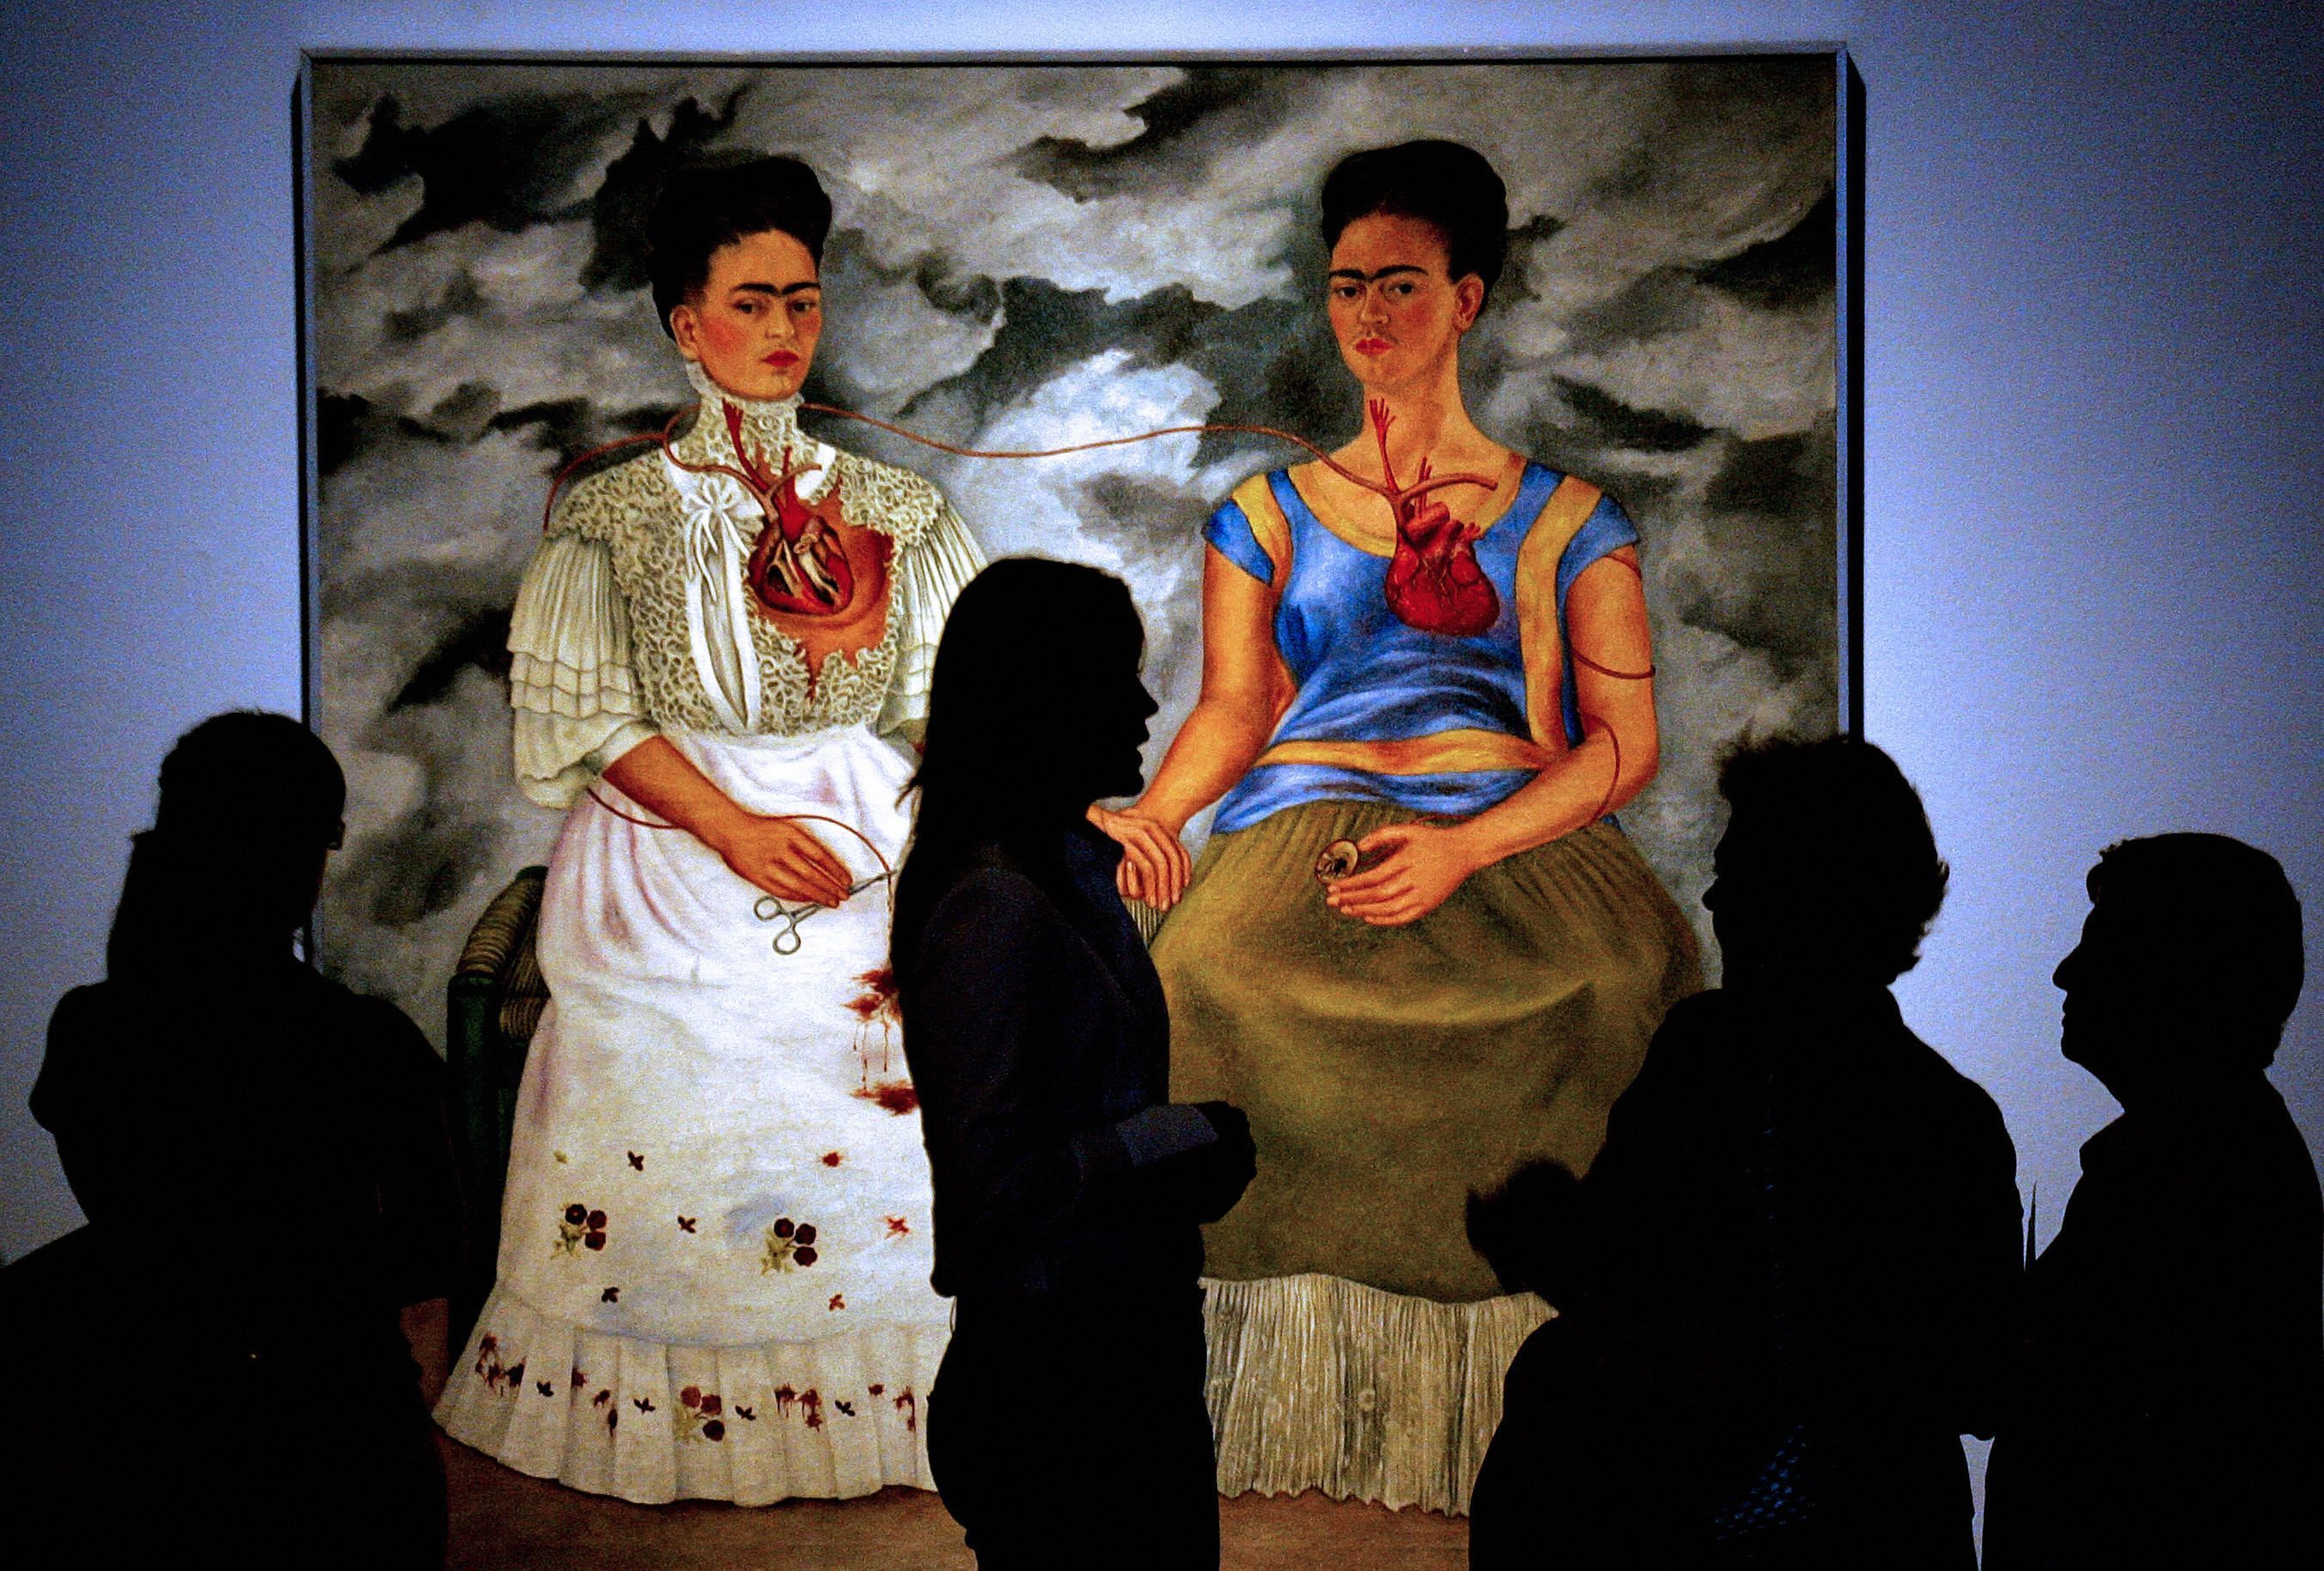 Desierto observación Omitido Los 20 cuadros más famosos de la historia pintados por mujeres